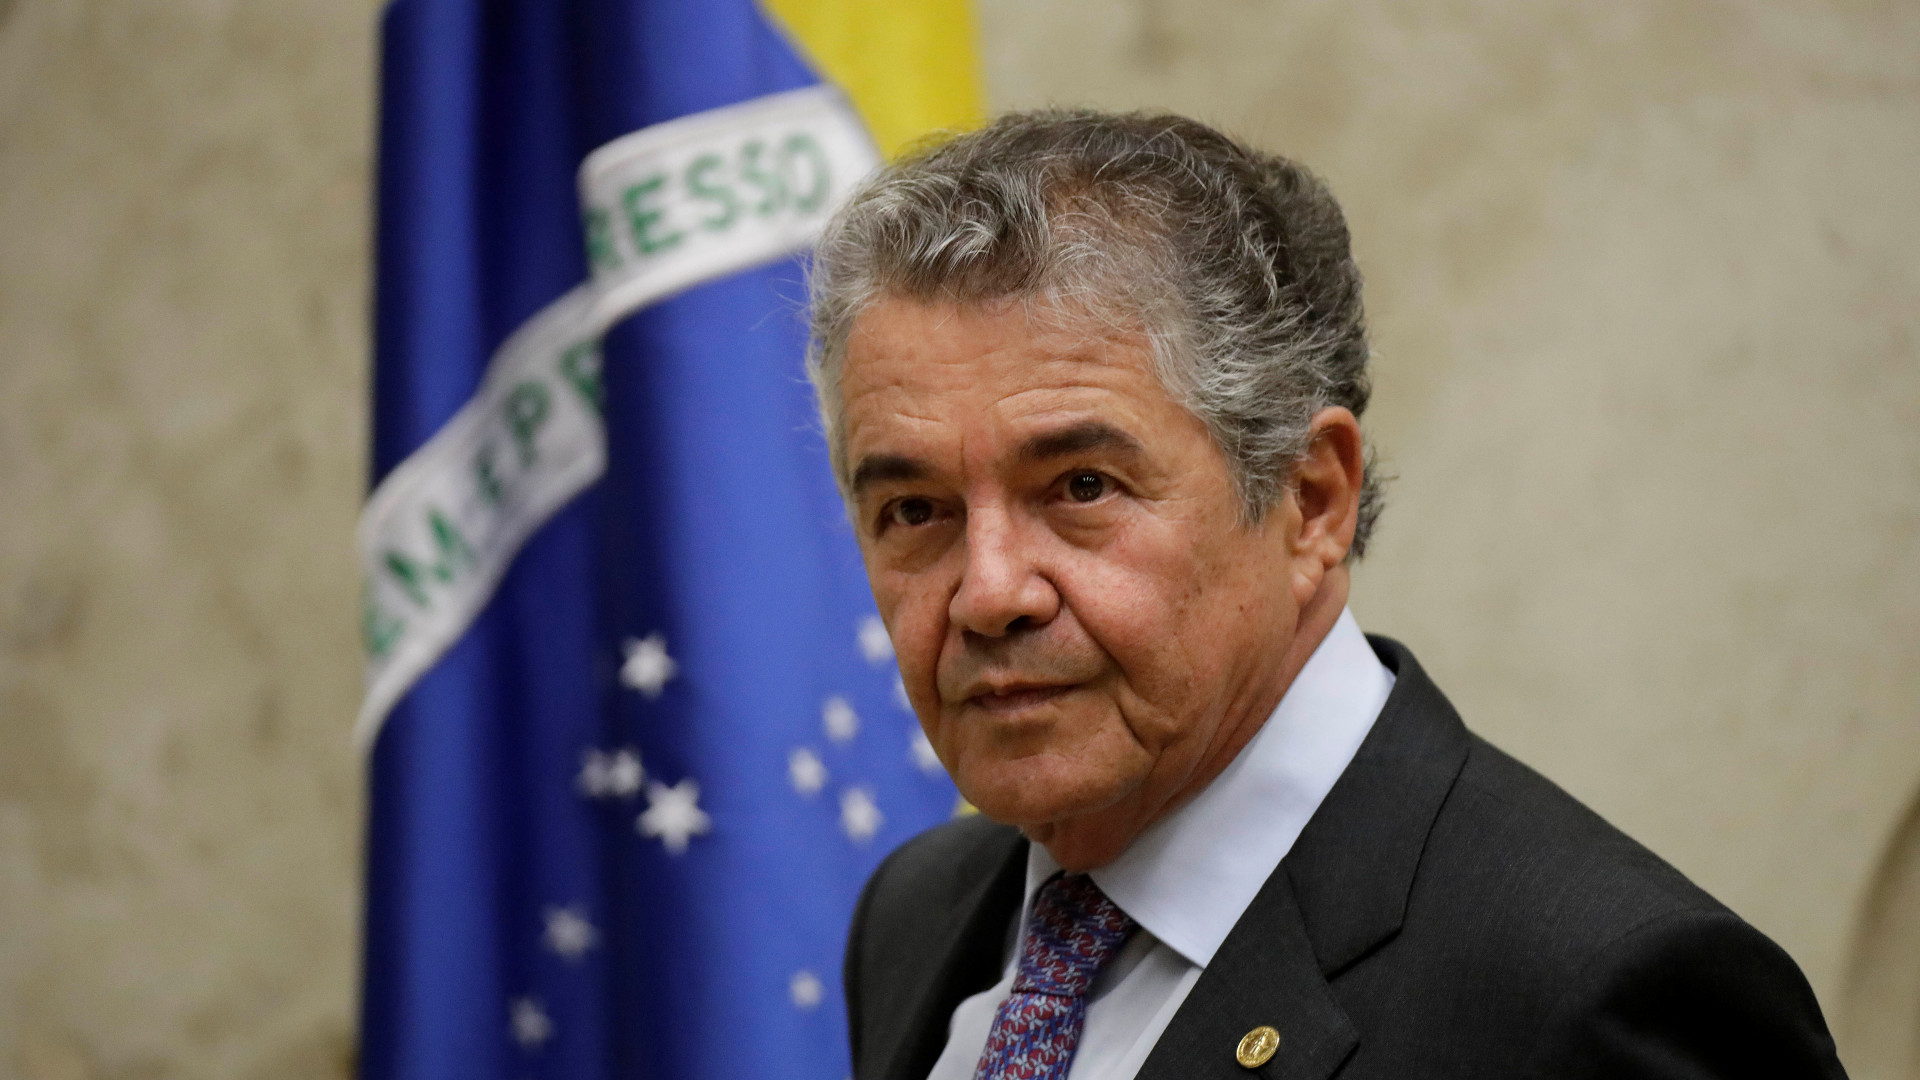 Marco Aurélio a Bolsonaro: Busque corrigir as desigualdades sociais